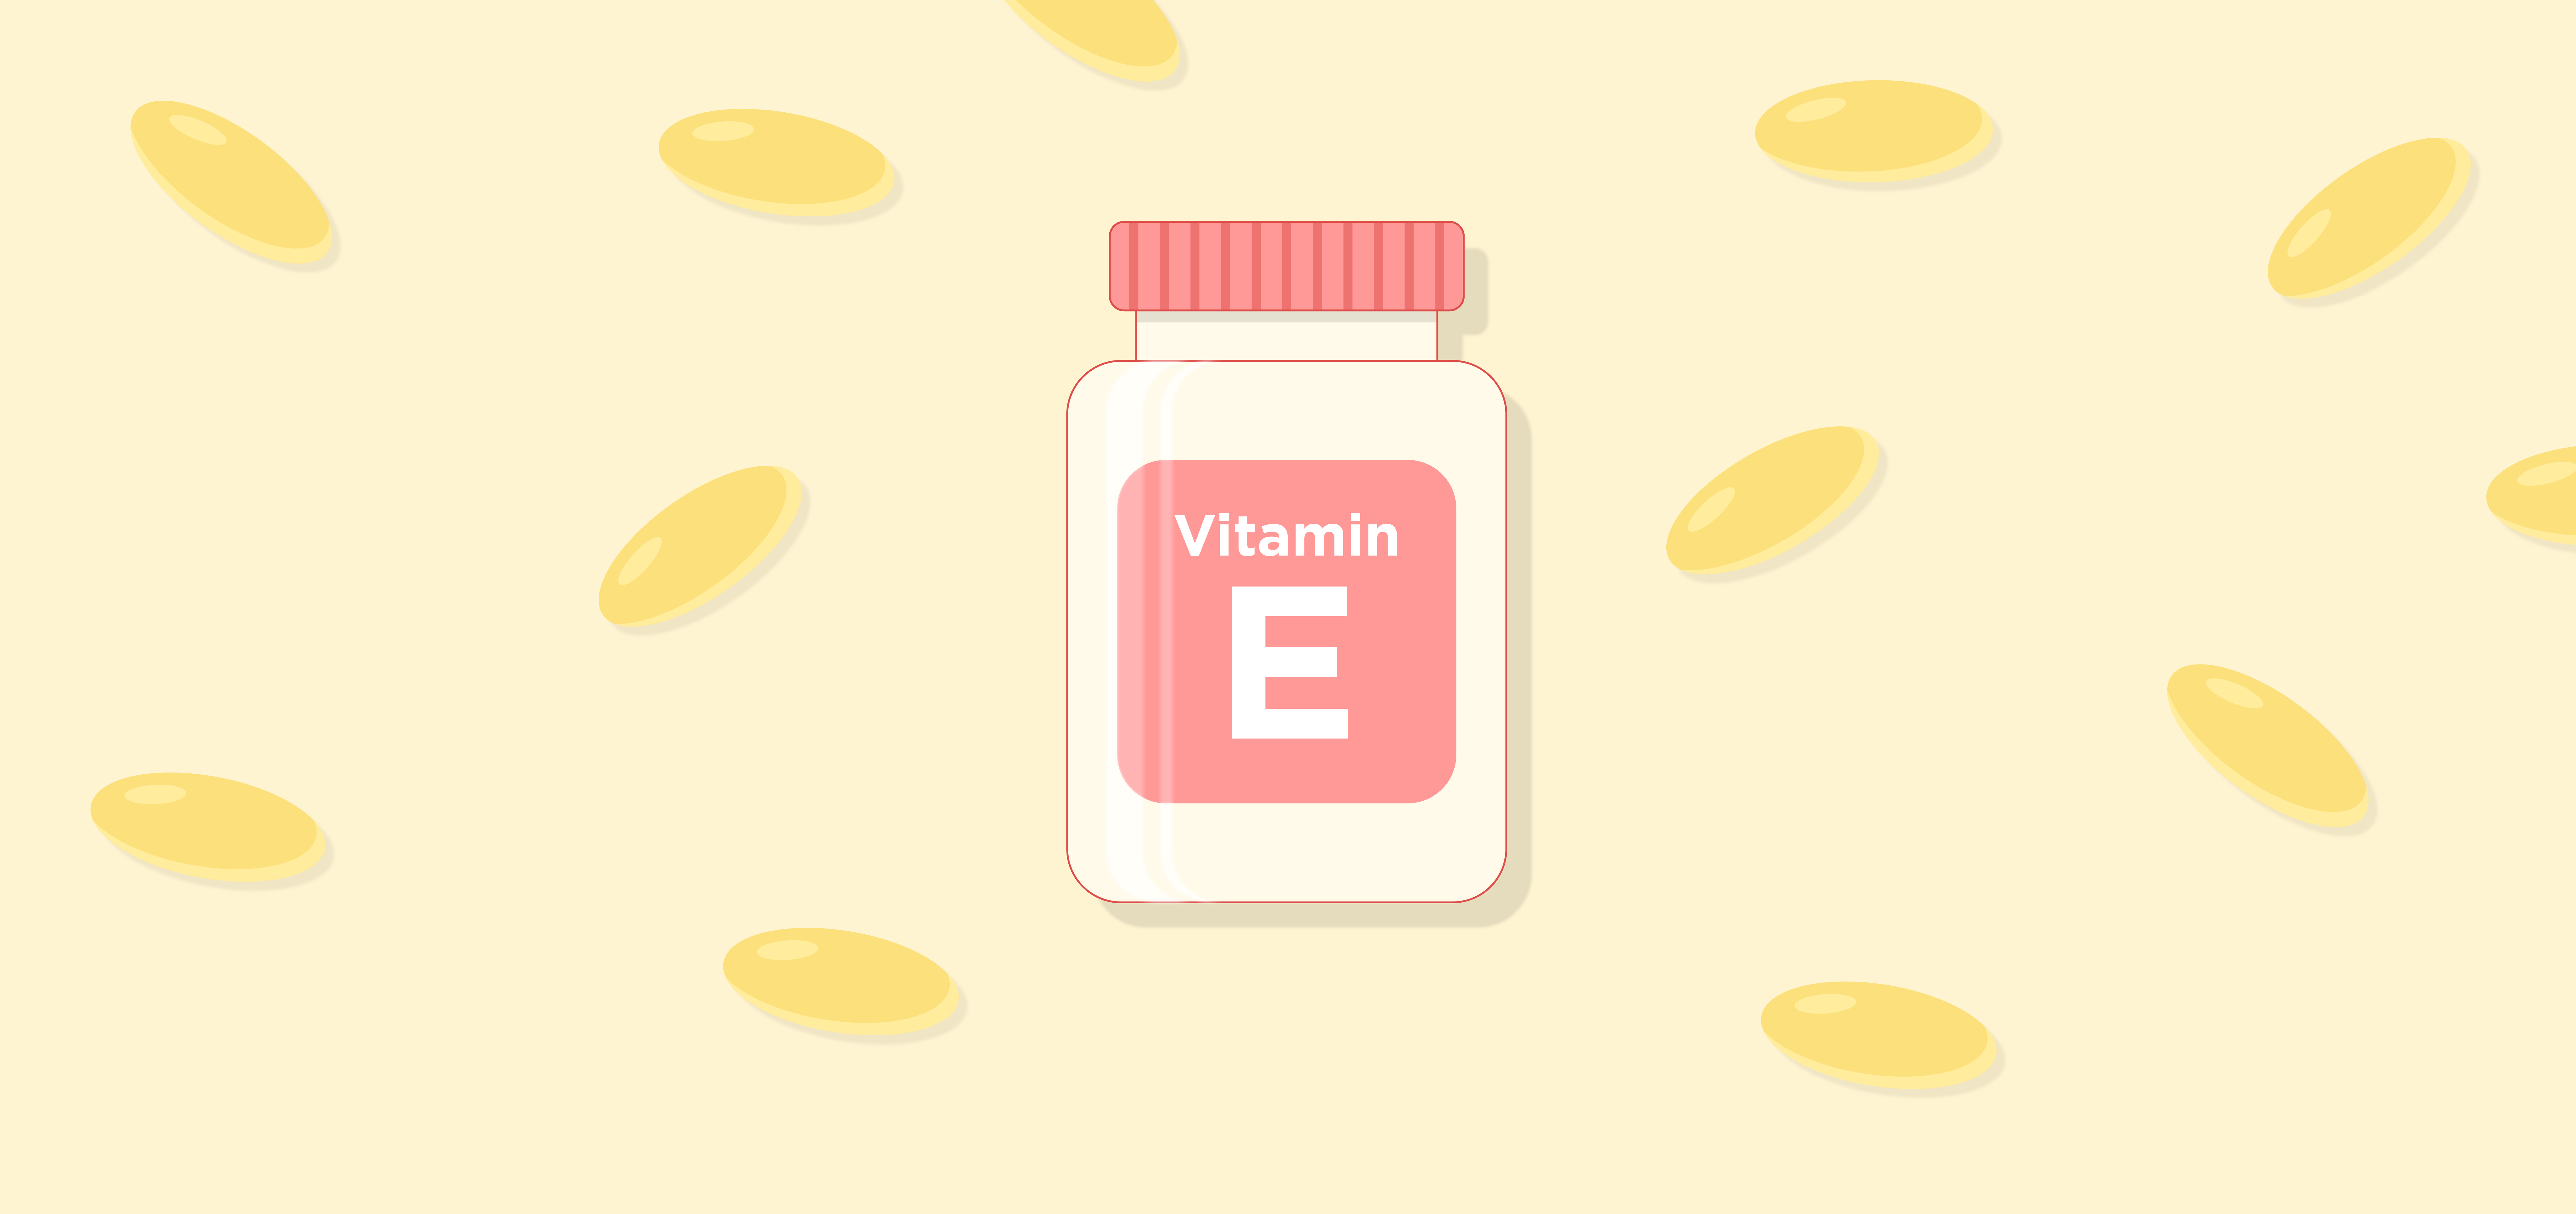 vitamin e benefits for skin